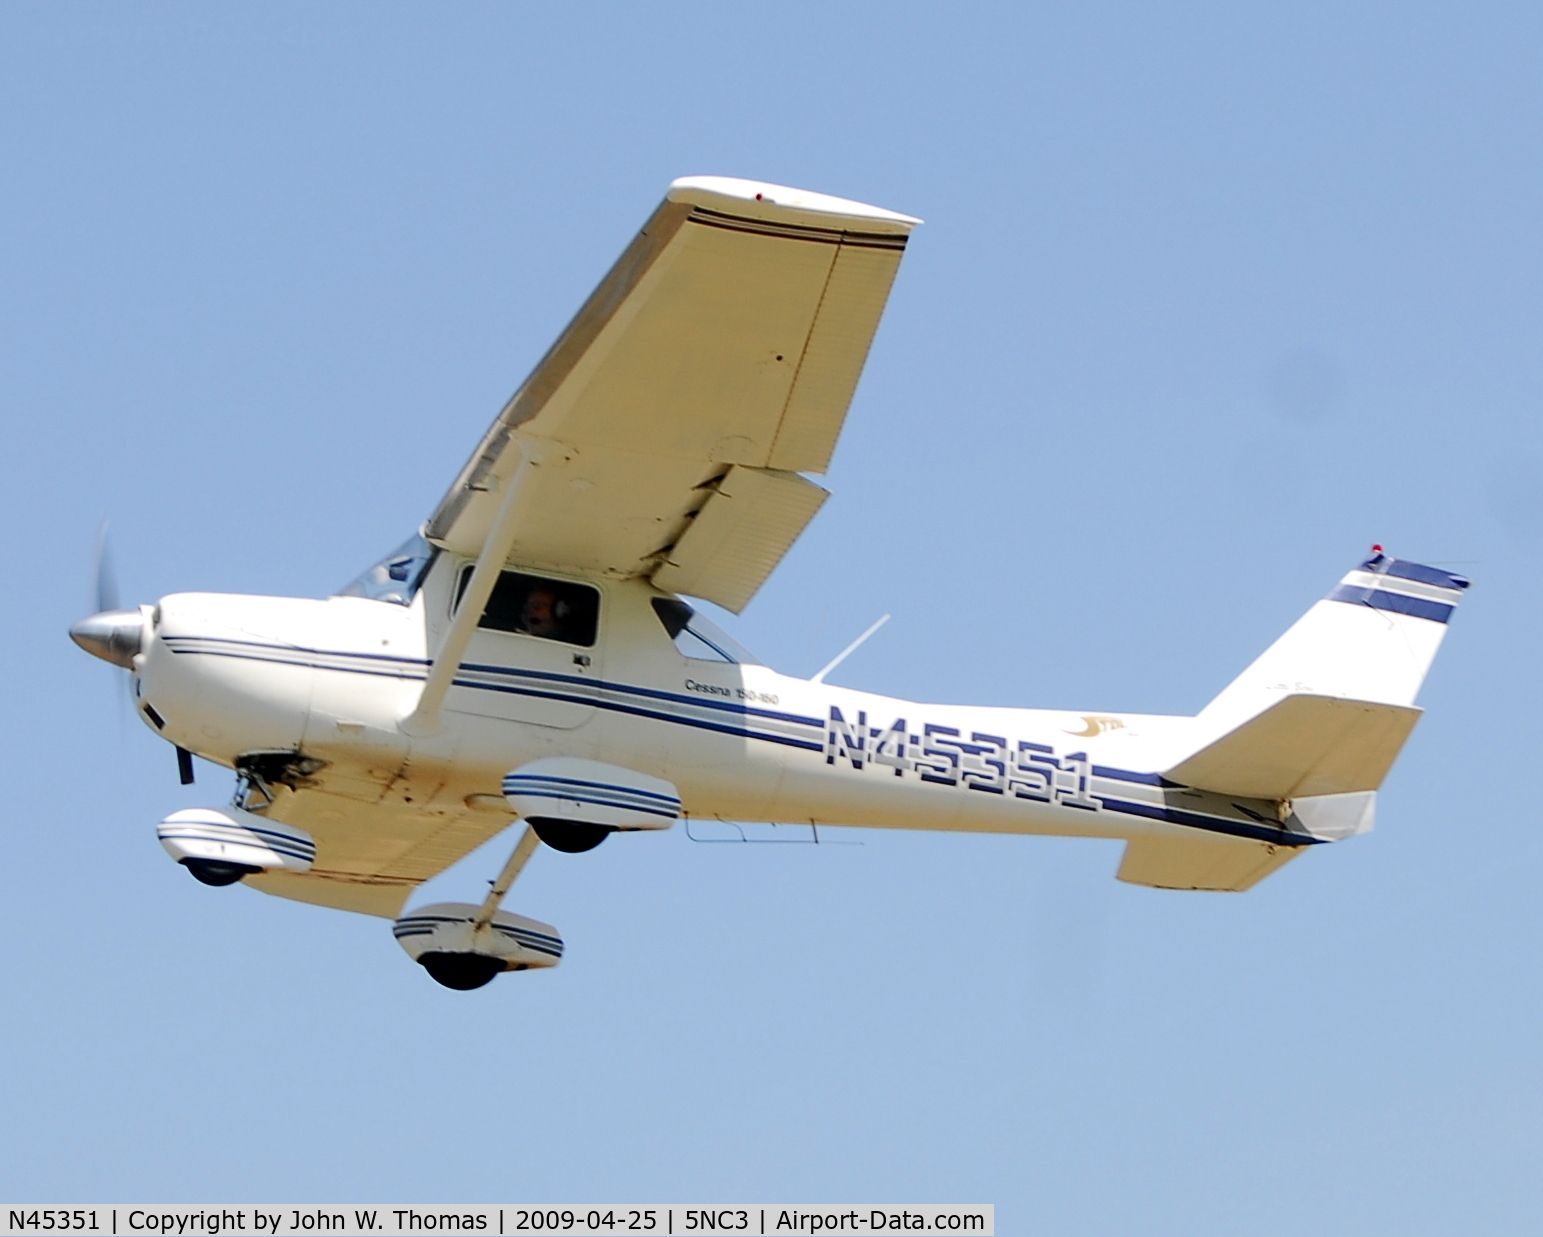 N45351, 1975 Cessna 150M C/N 15076864, Departing runway 31